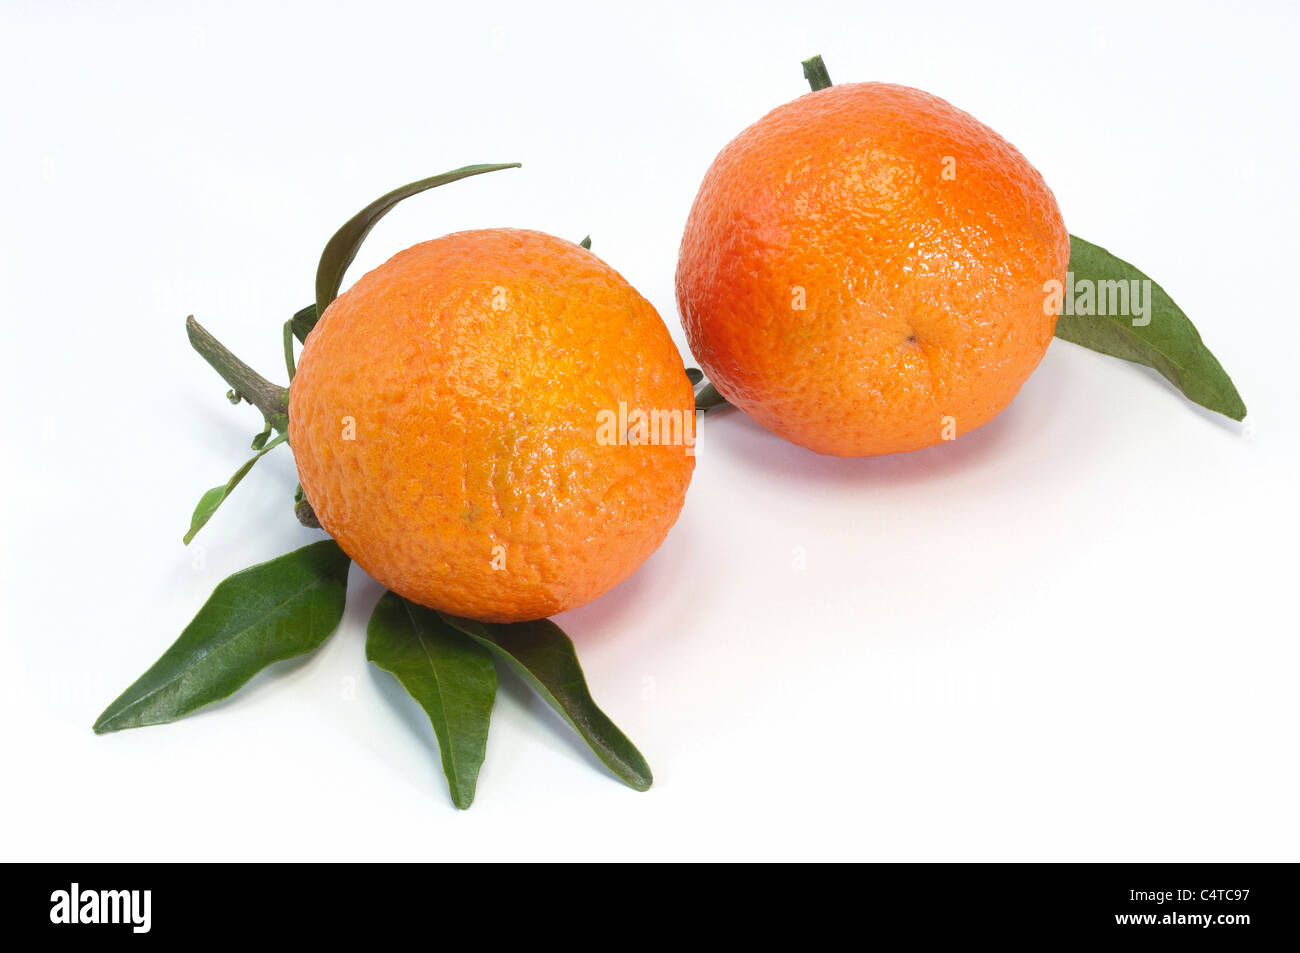 Nuove imagesaffiche 24 x 30 cm Agrumi/Citrus Fruit/zitrusfrüchte